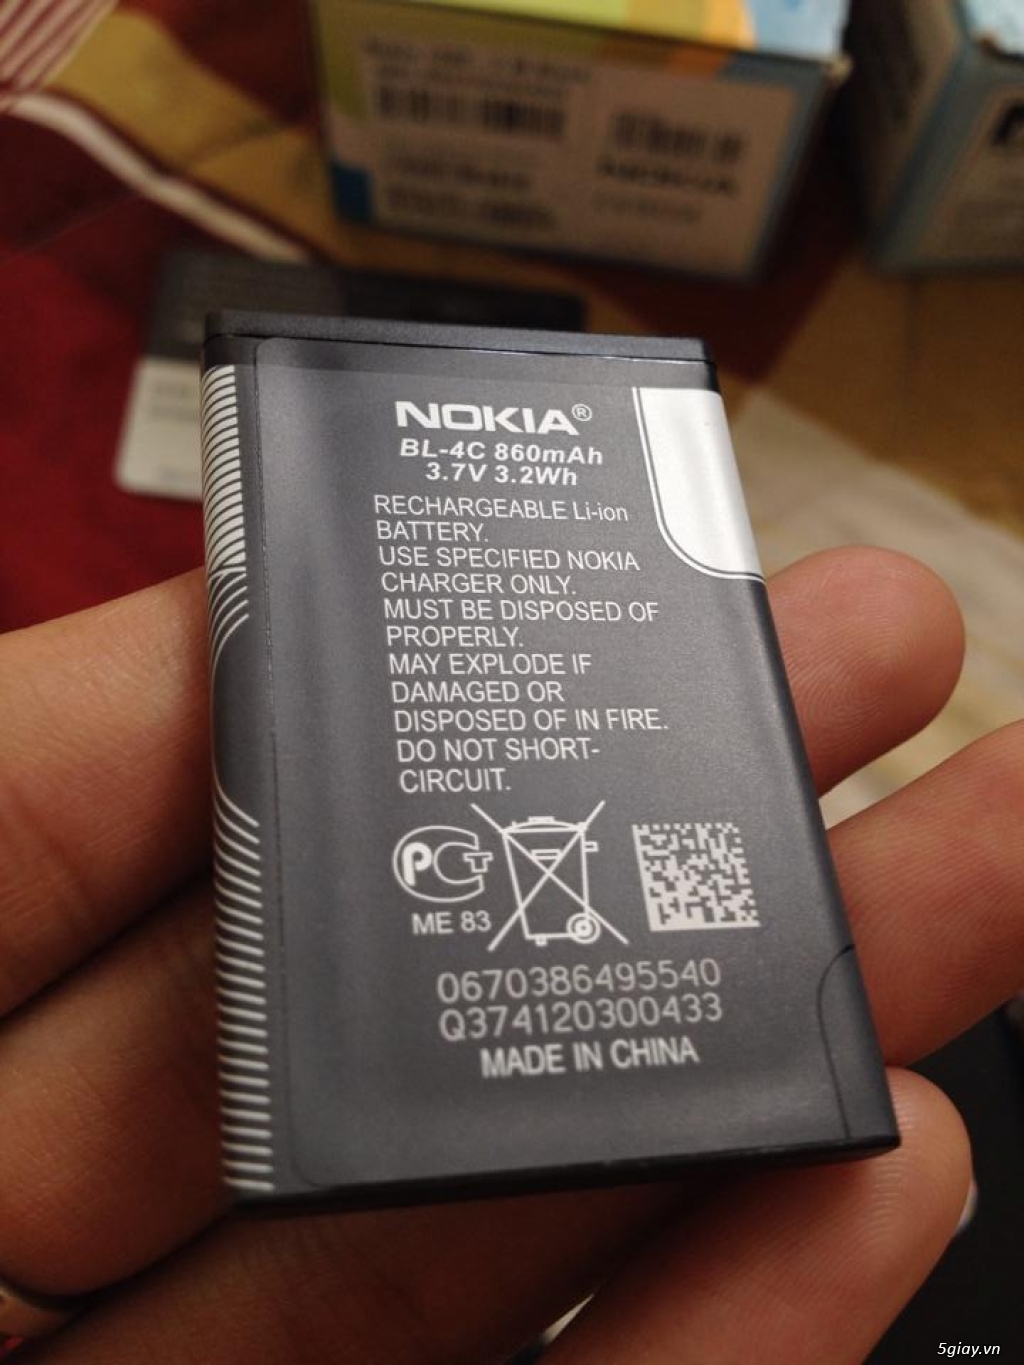 Nokia 1202 new 100% hàng sưu tầm còn nguyên thẻ bảo hành Nokia Care - 8